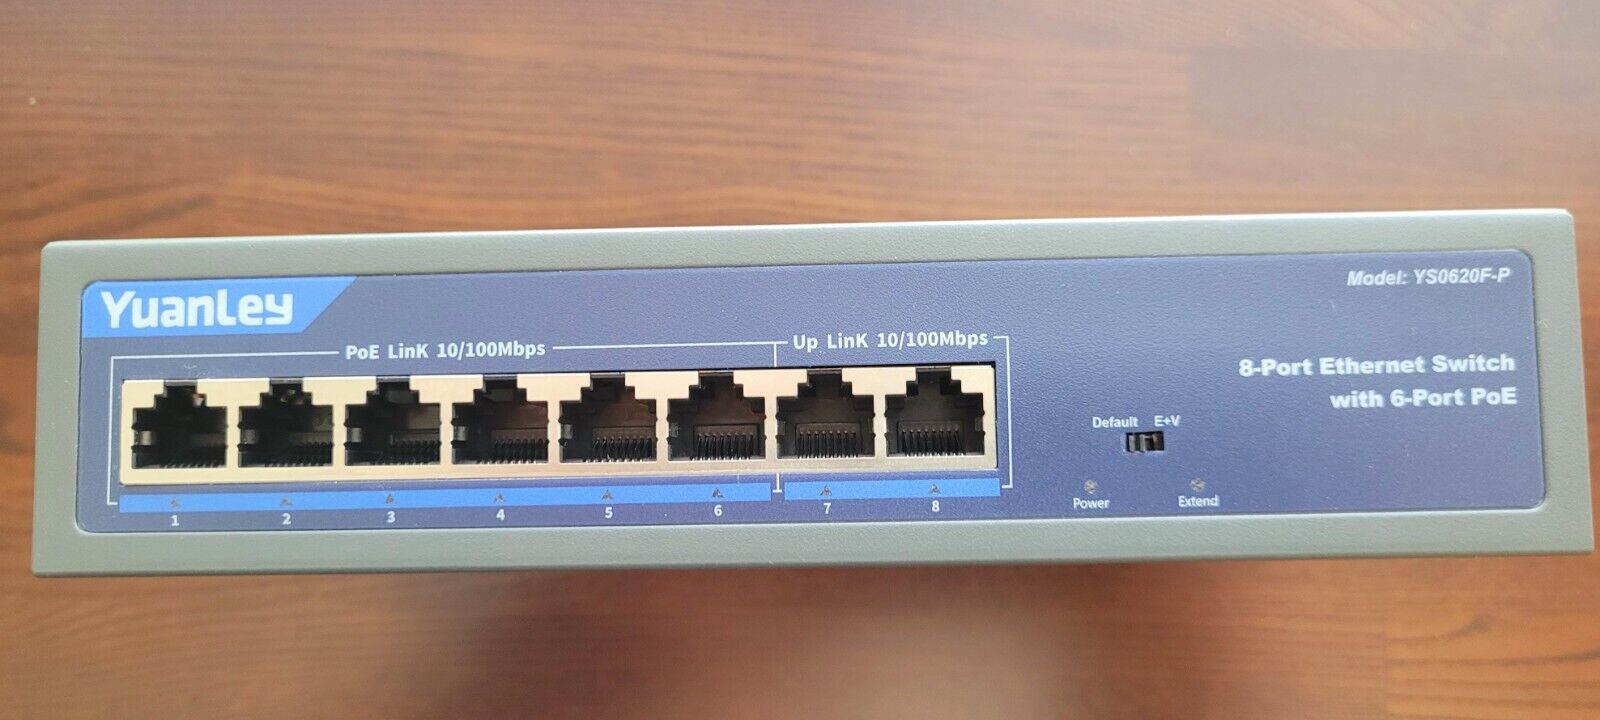 YuanLey 8 Port Ethernet Switch,6 Port PoE 10/100 Mbps, 2 Port 10/100 Mbps UpLink